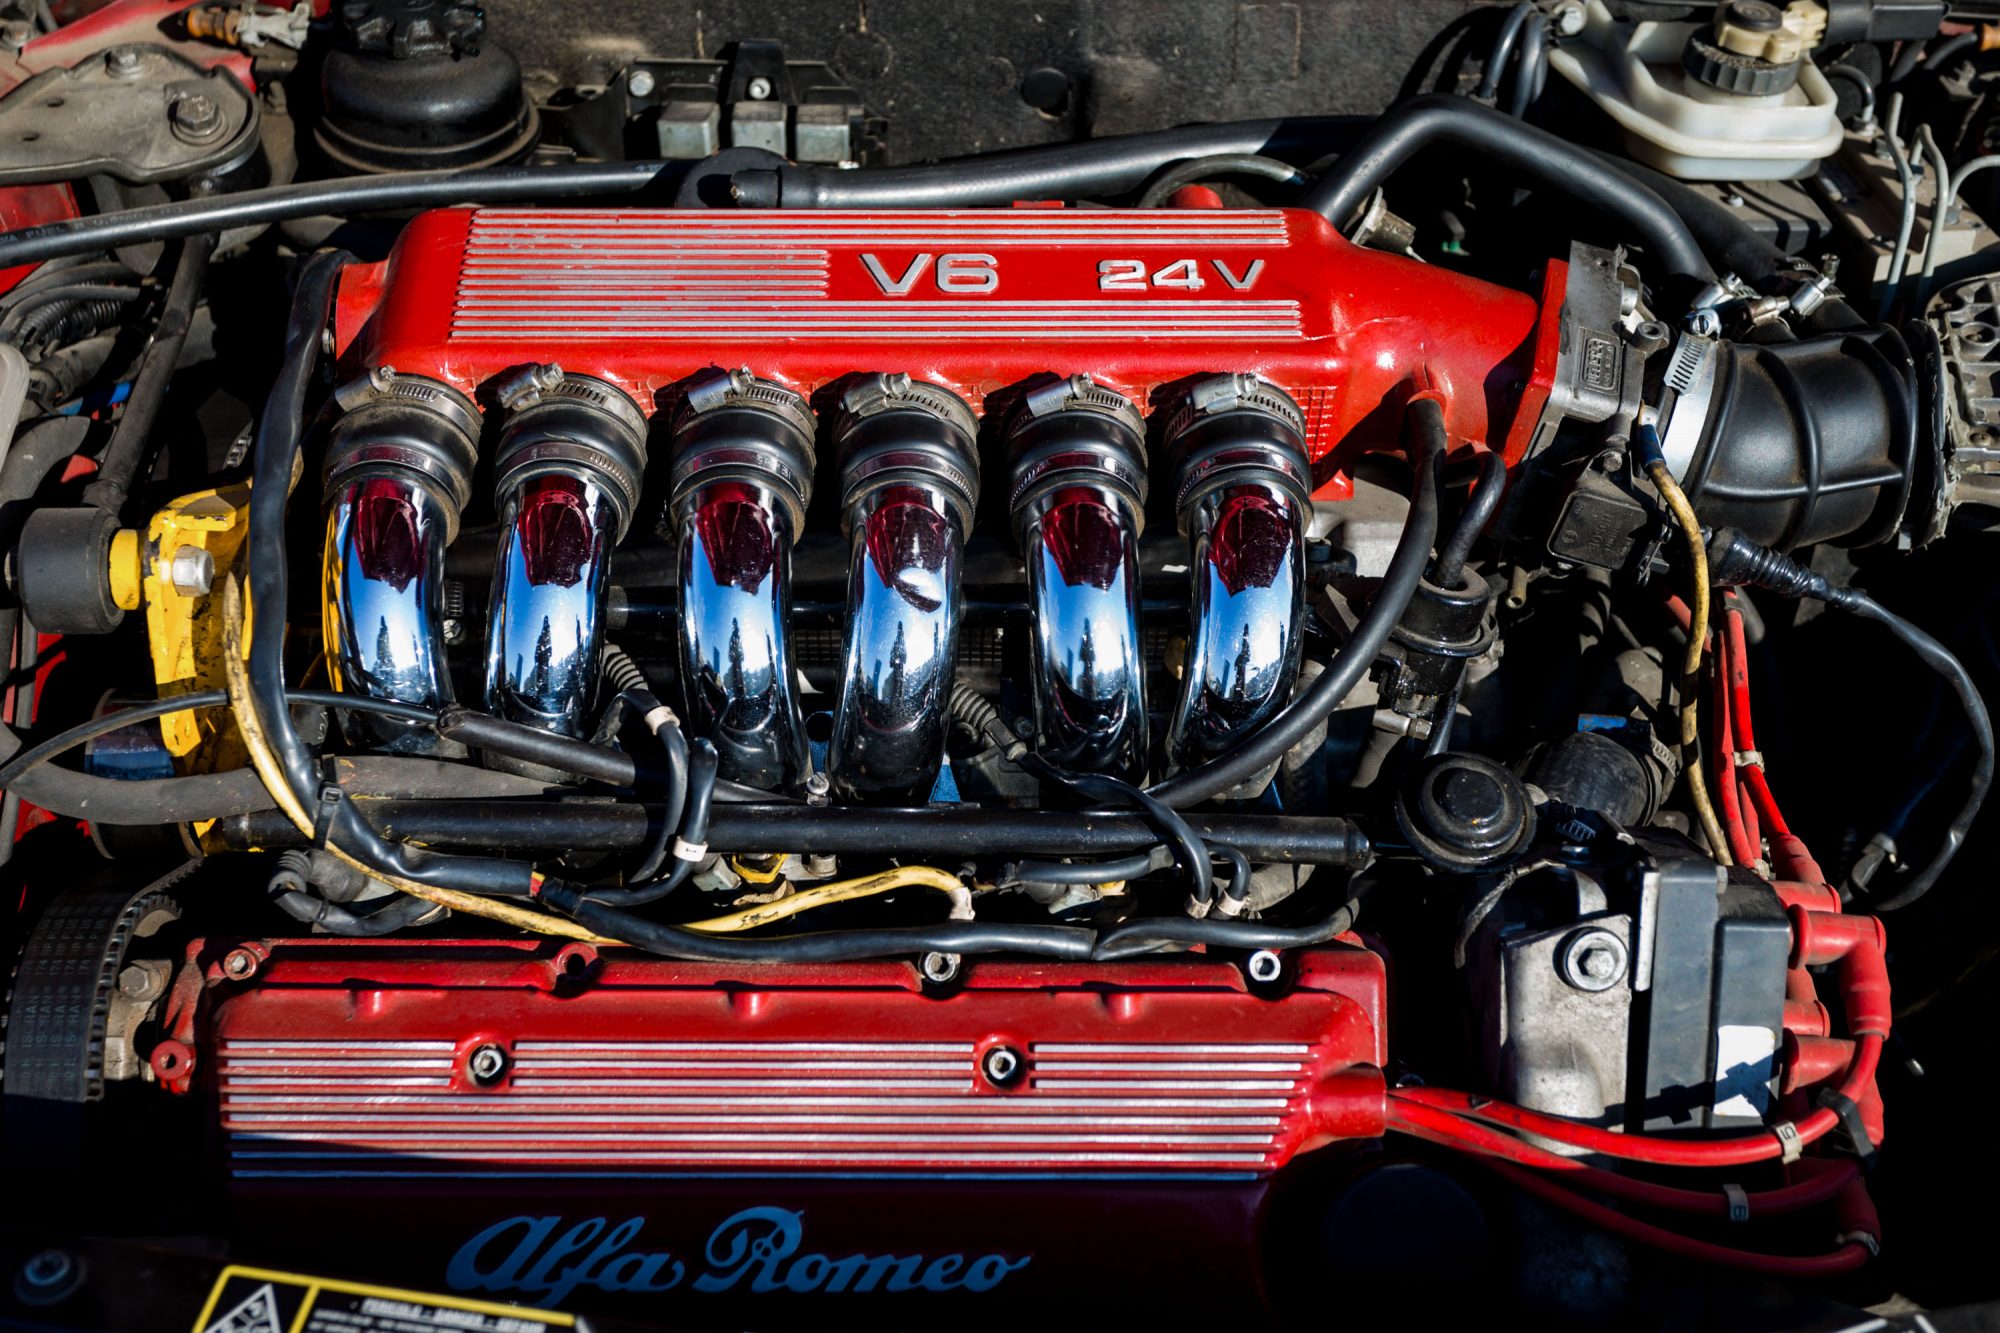 Alfa Romeo 'Busso' V6 engine